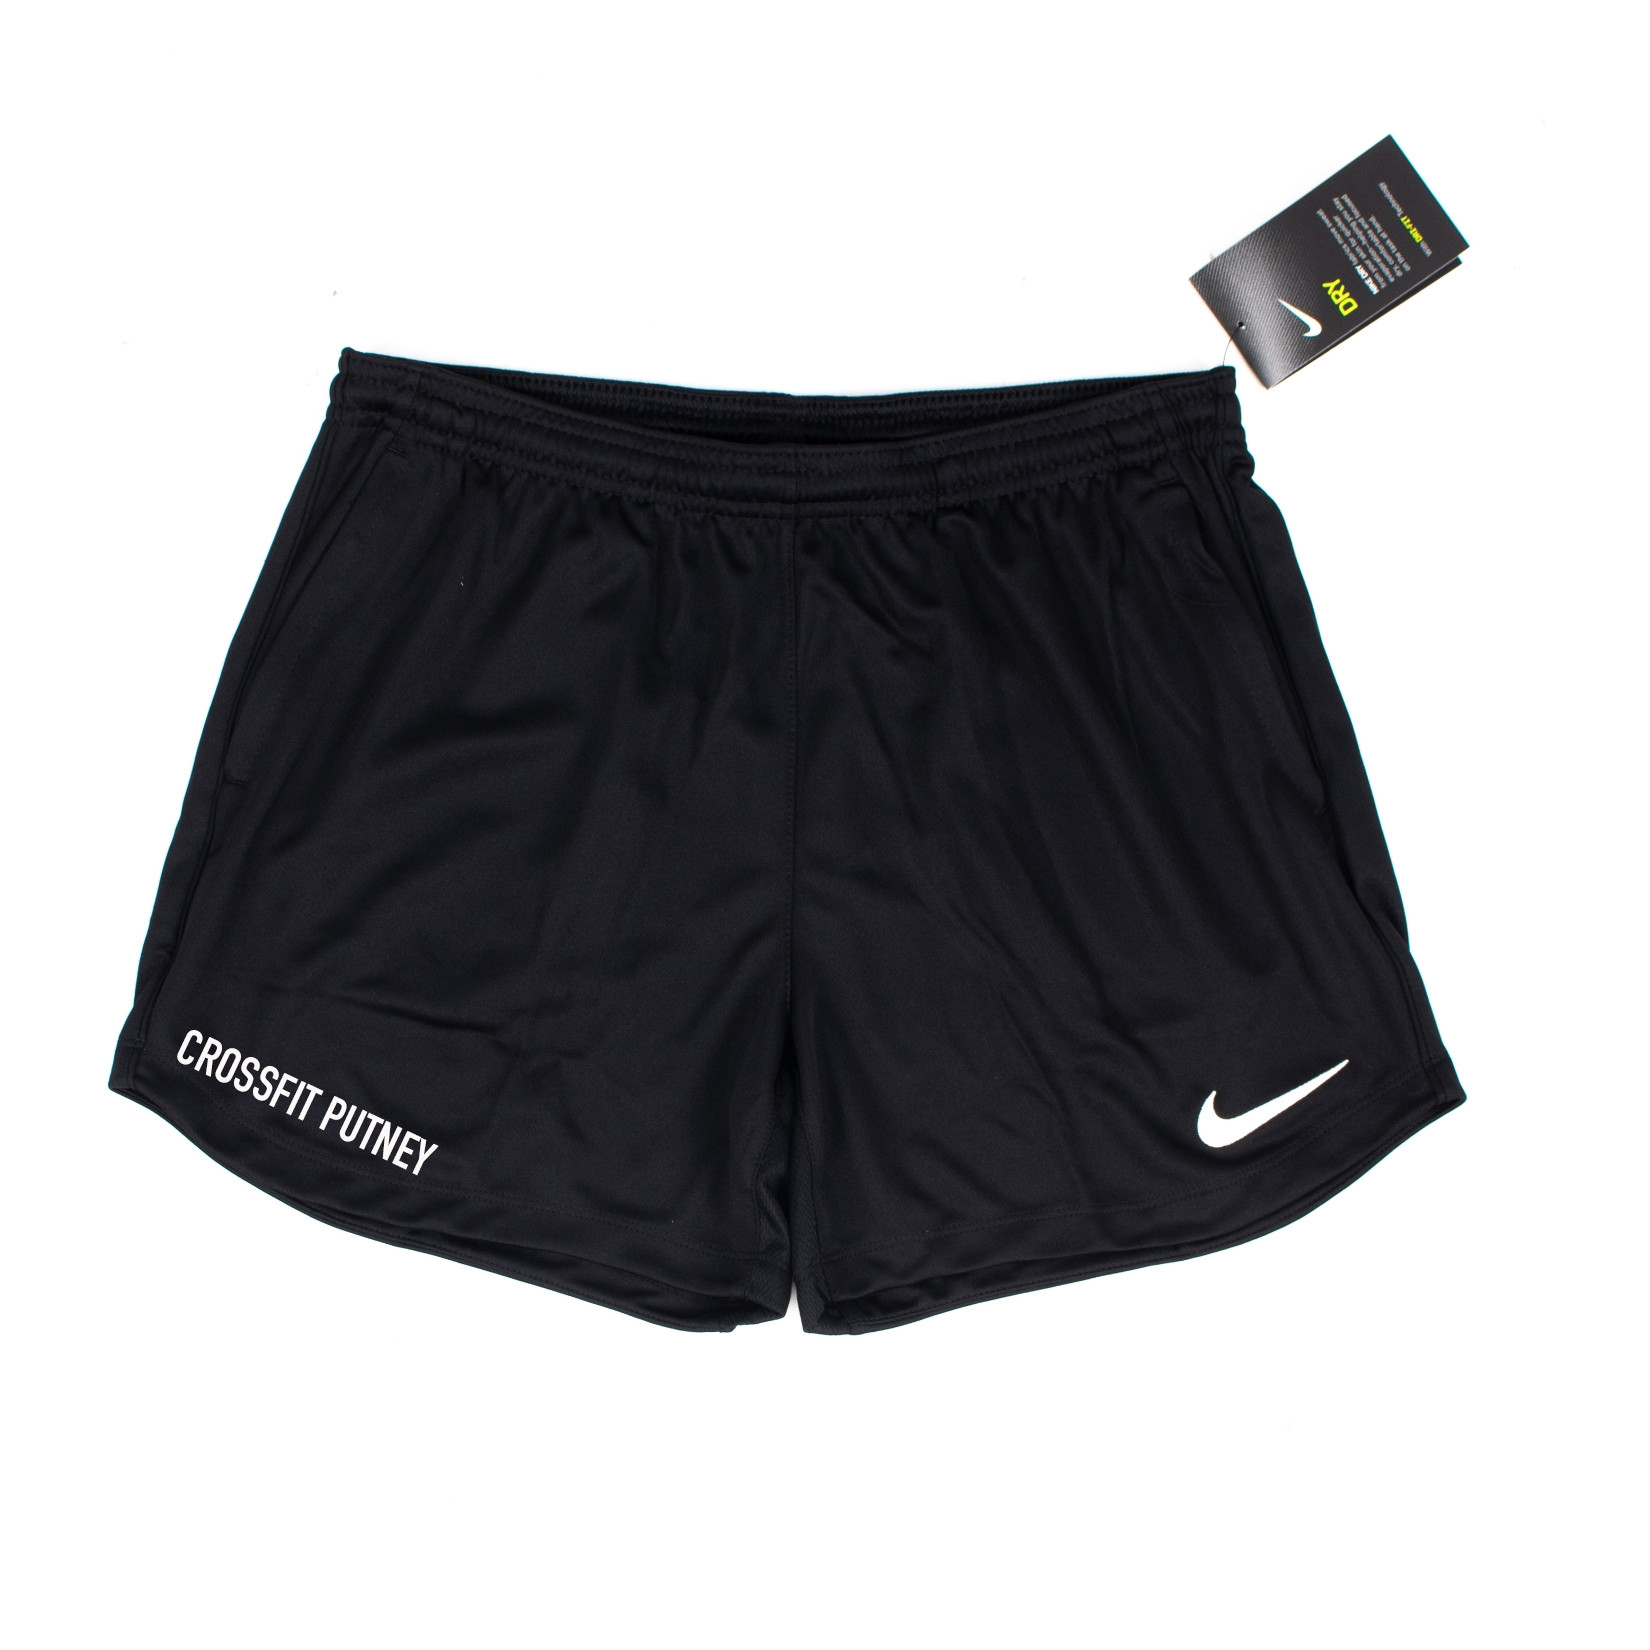 Nike Park 20 Pocketed Training Shorts (W)